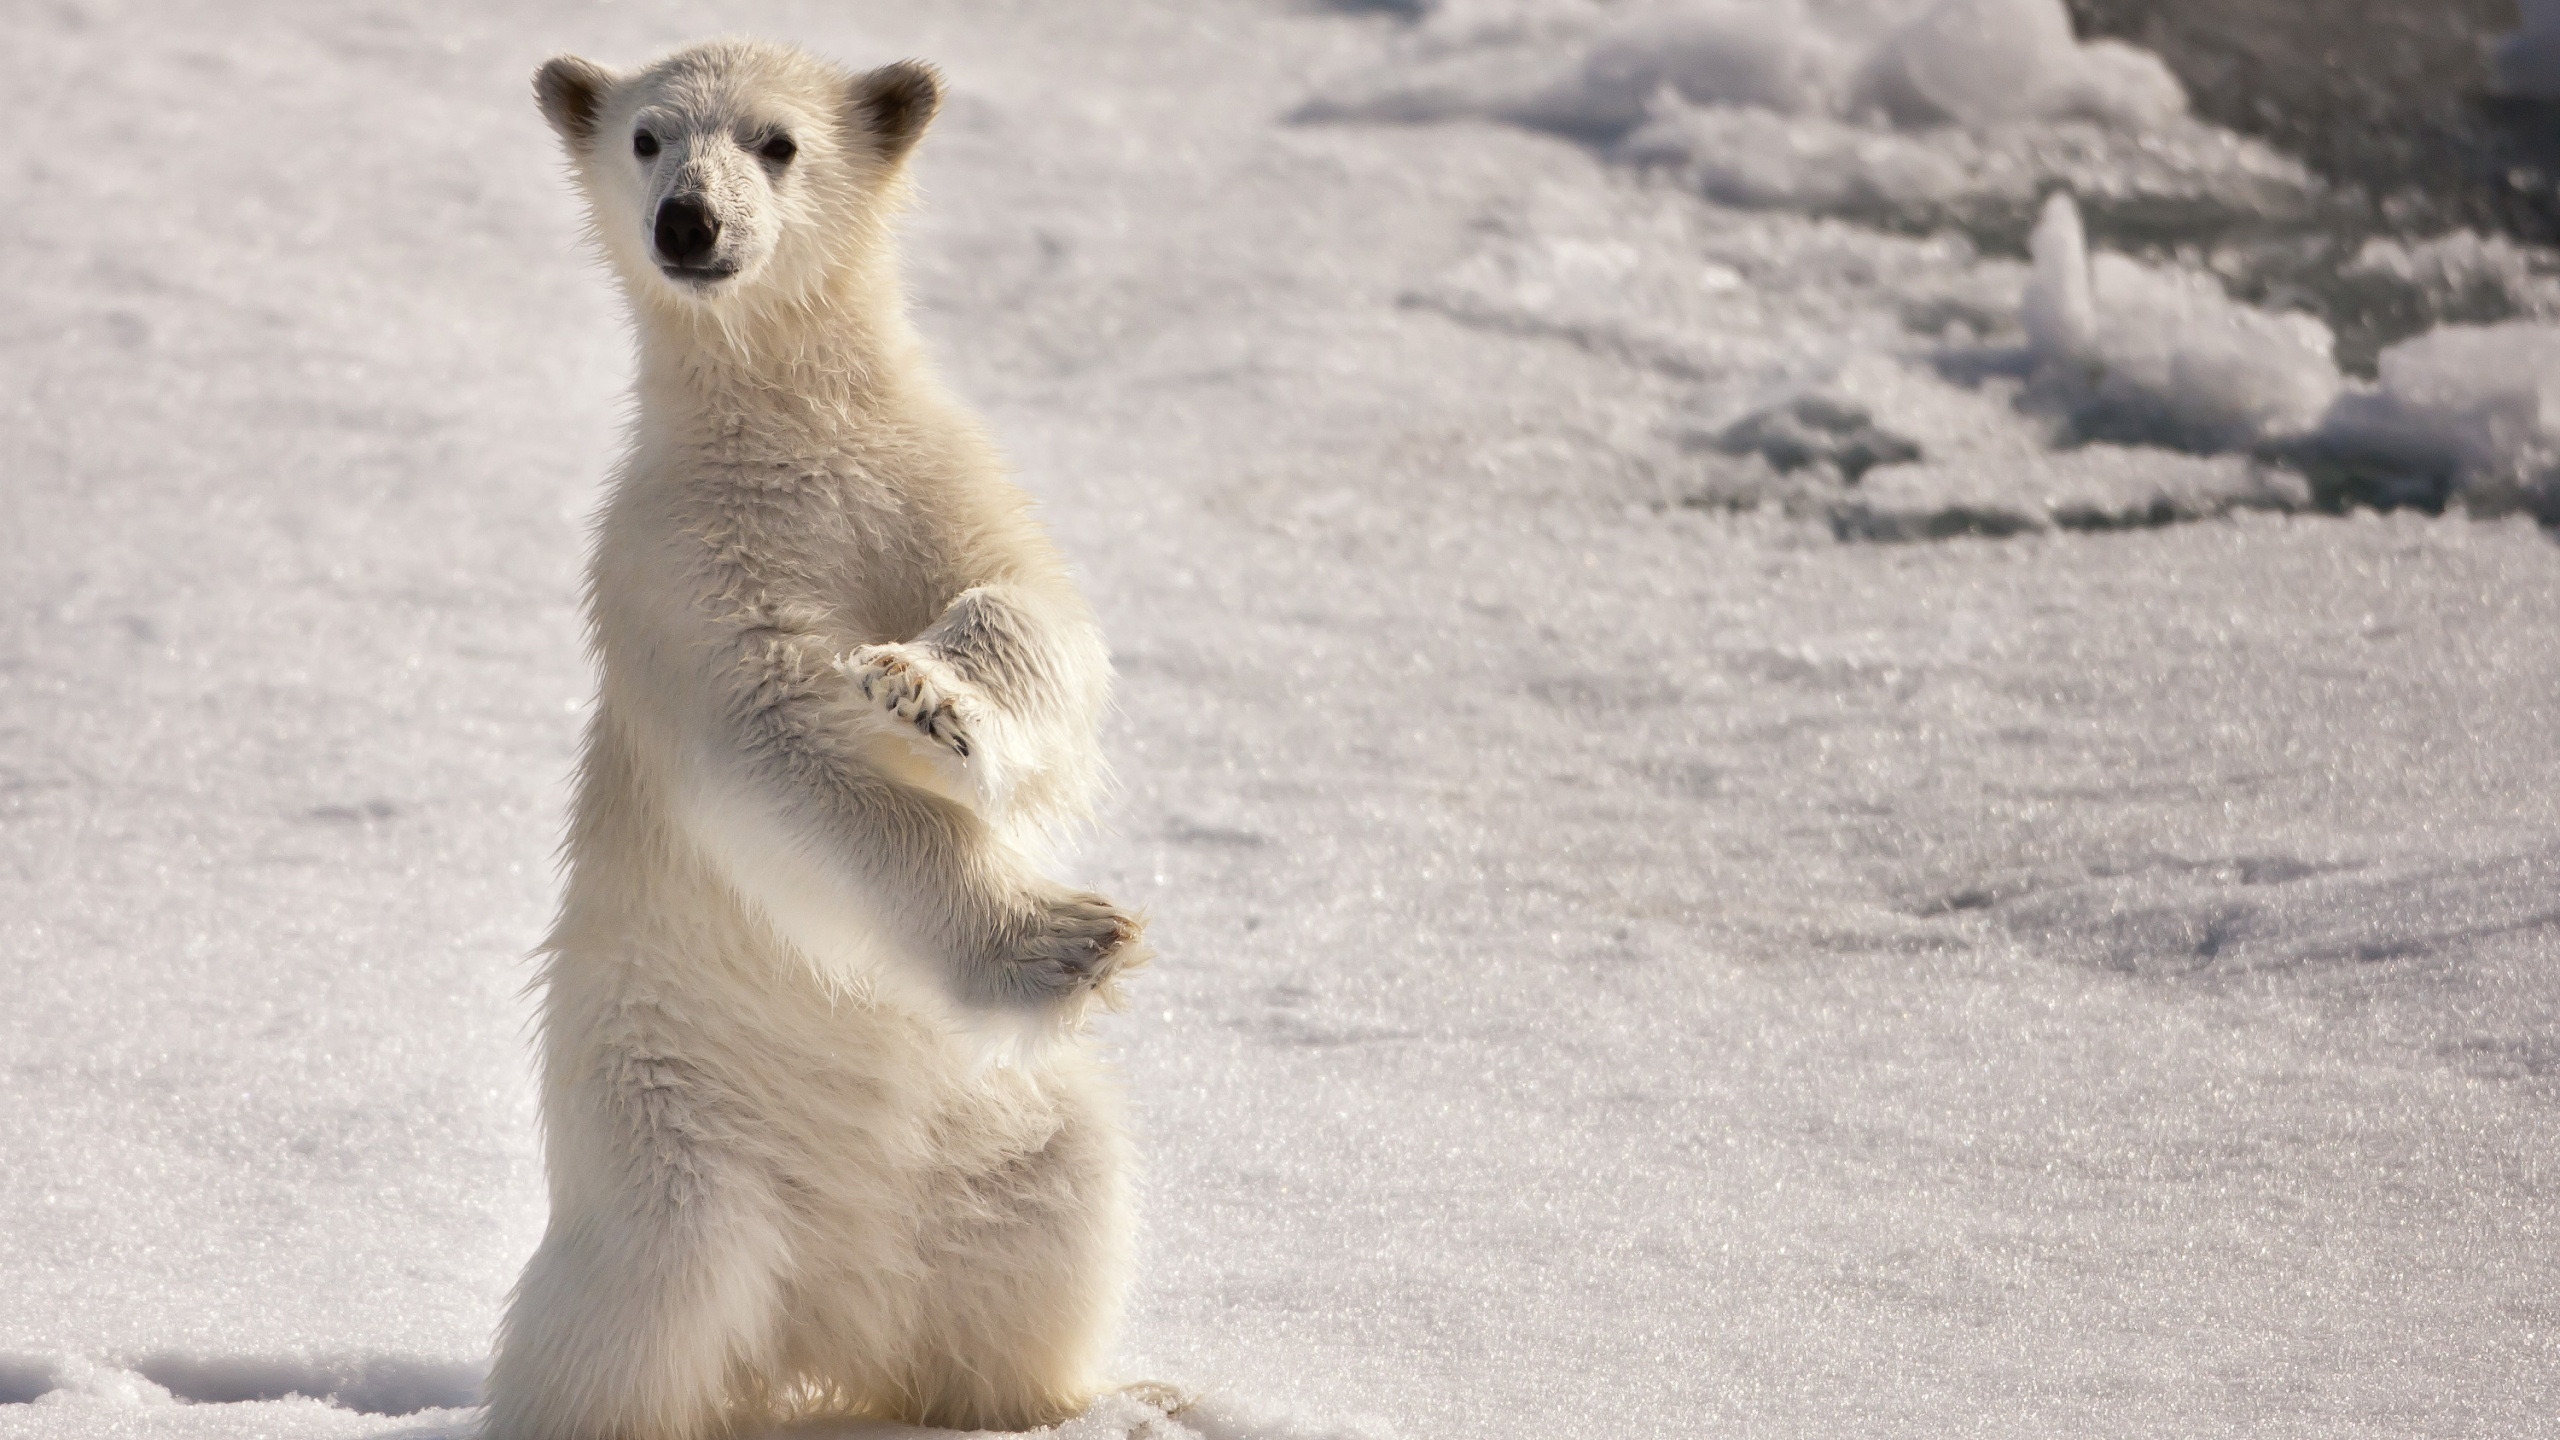 Curious Polar Bear for 2560x1440 HDTV resolution